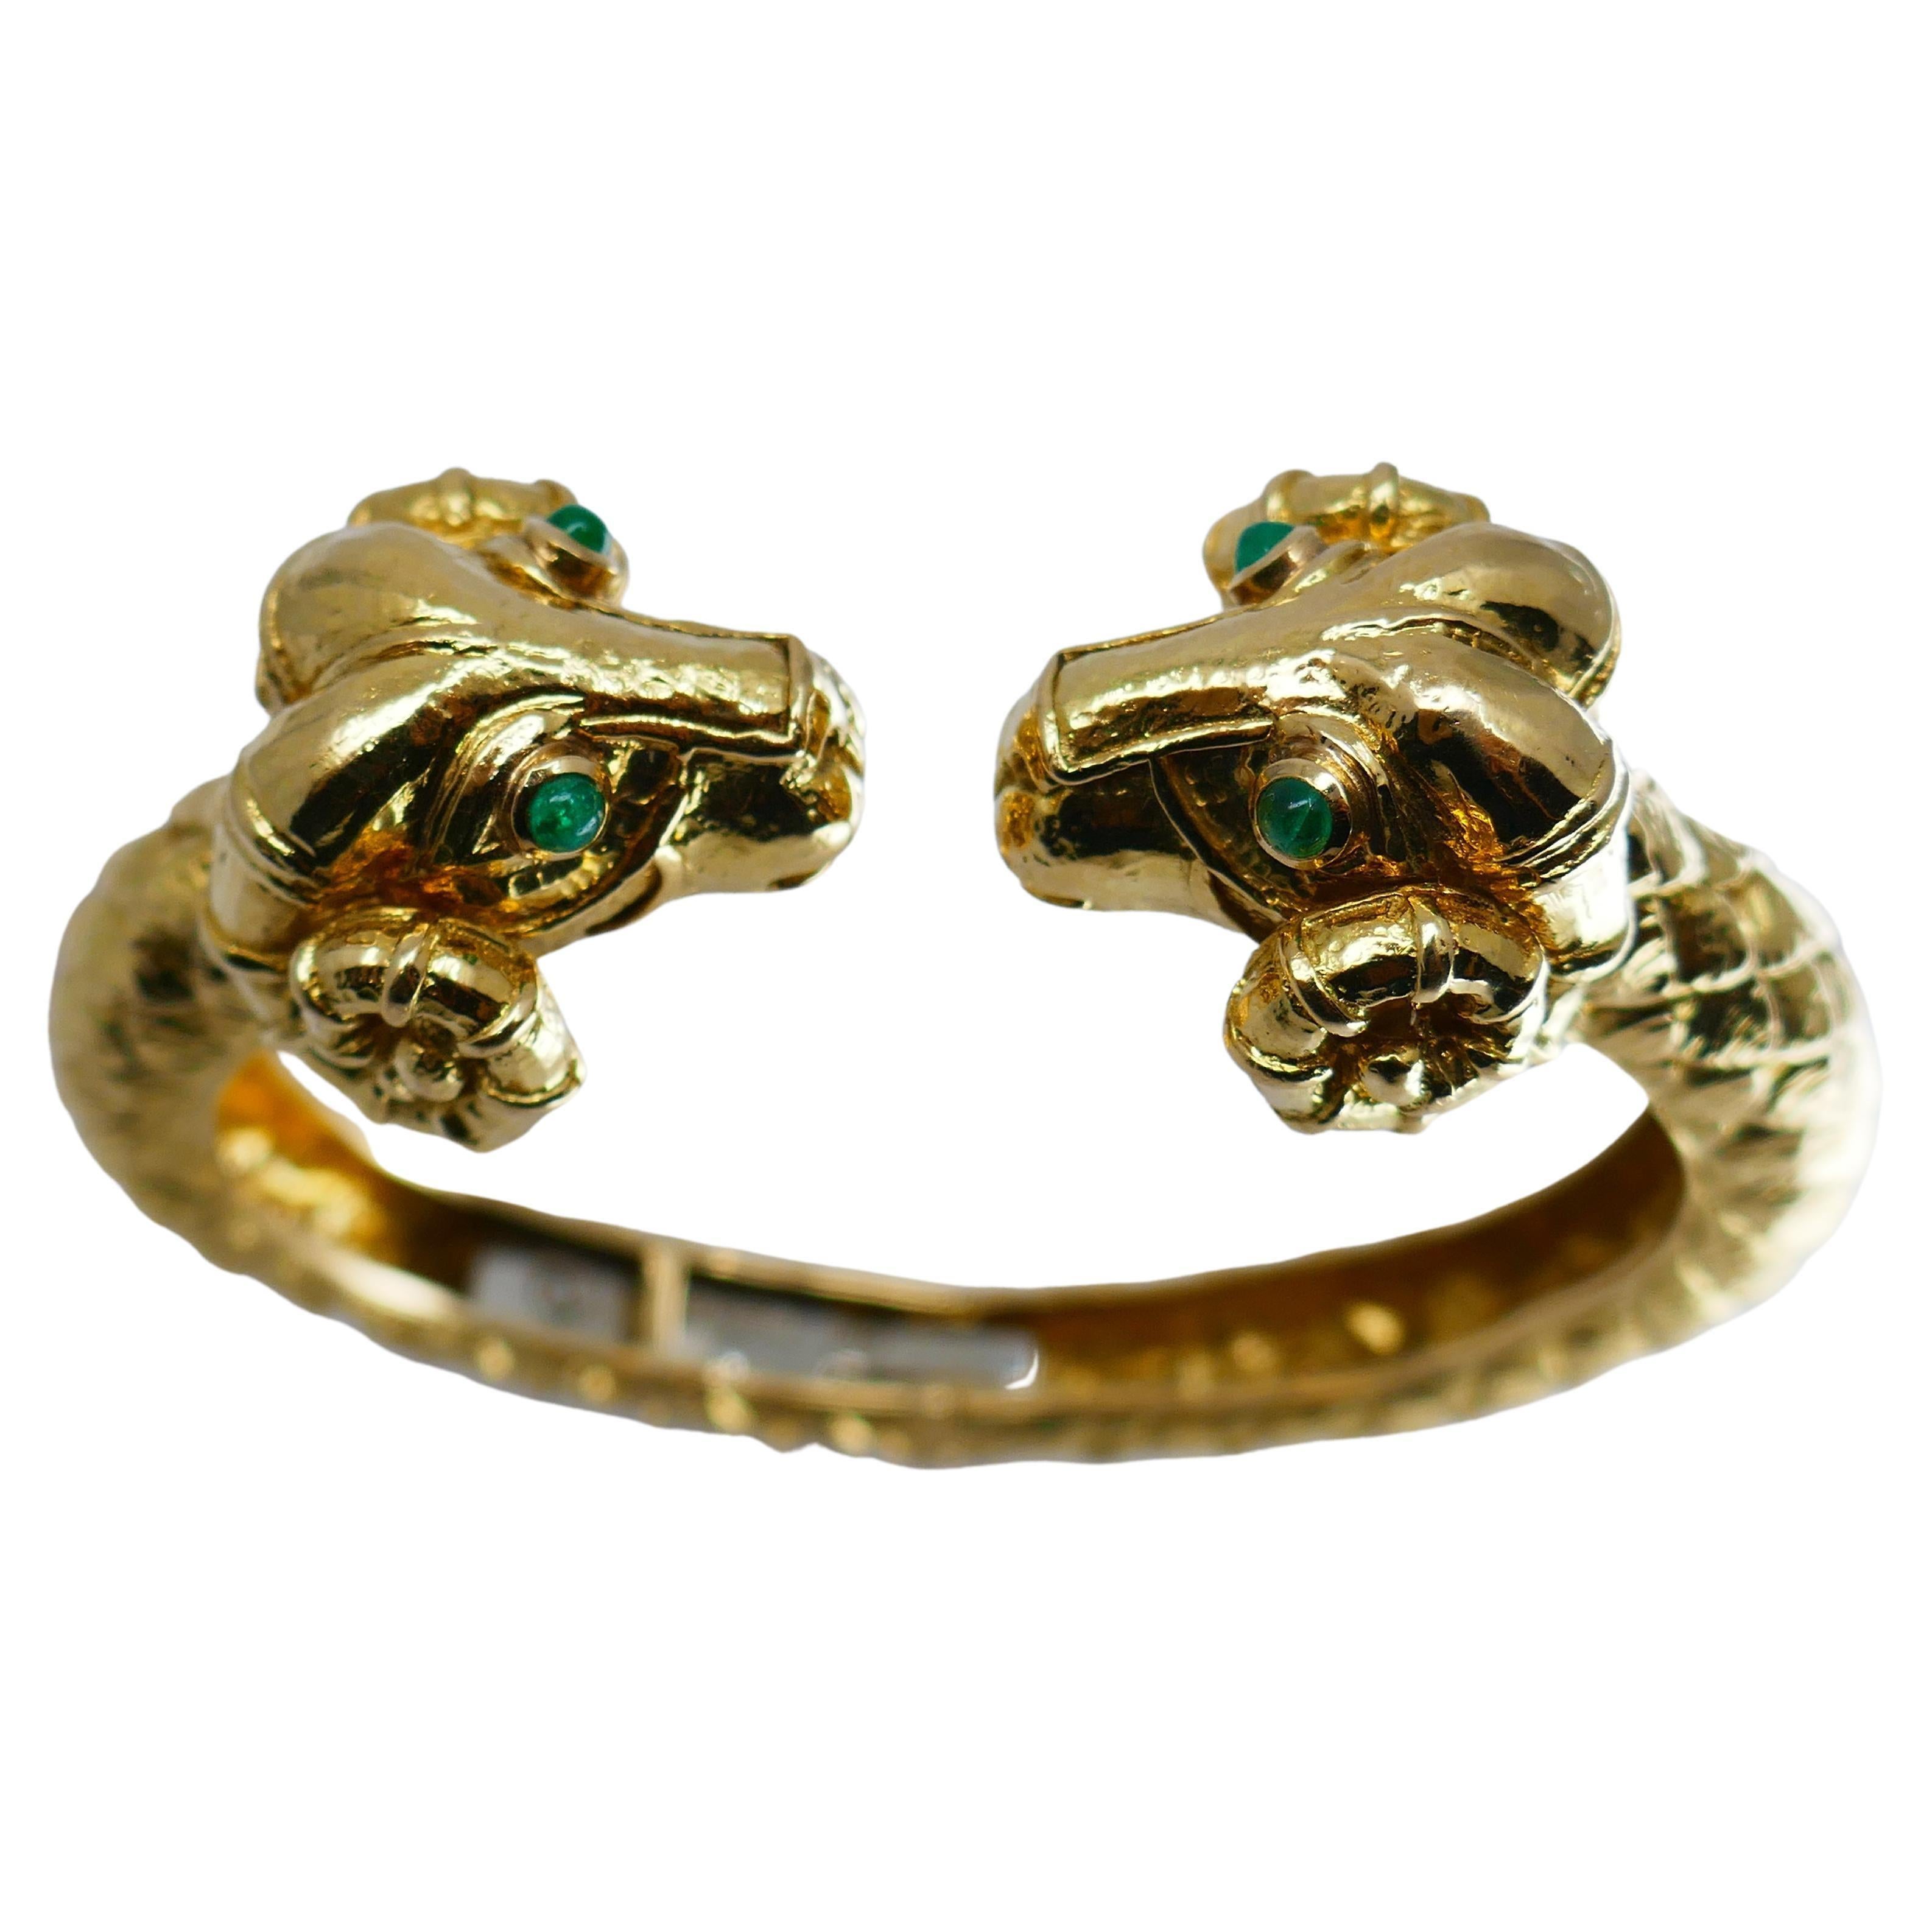 Un bracelet manchette à charnière de David Webb, en or 18 carats, est orné d'émeraudes.
Le bracelet représente deux têtes de bélier se faisant face. Les béliers peuvent être interprétés comme le signe astrologique du Bélier. L'émeraude est taillée